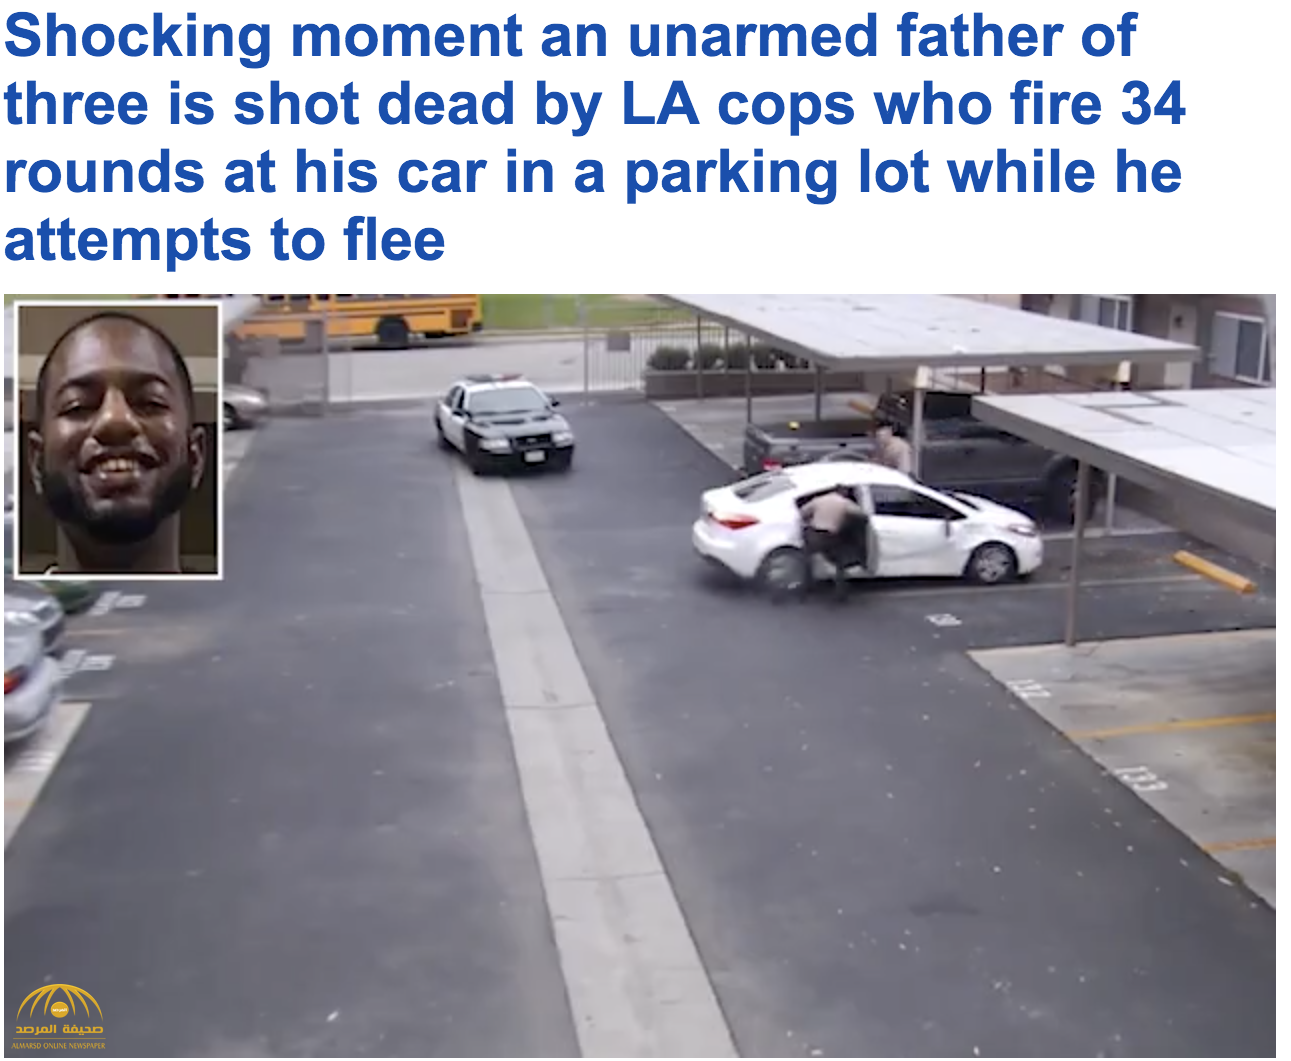 أطلقوا 34 رصاصة وأطفاله الثلاث في السيارة .. شاهد كيف تعاملت الشرطة الأمريكية  مع سائق رفض التوقف في  لوس أنجلوس